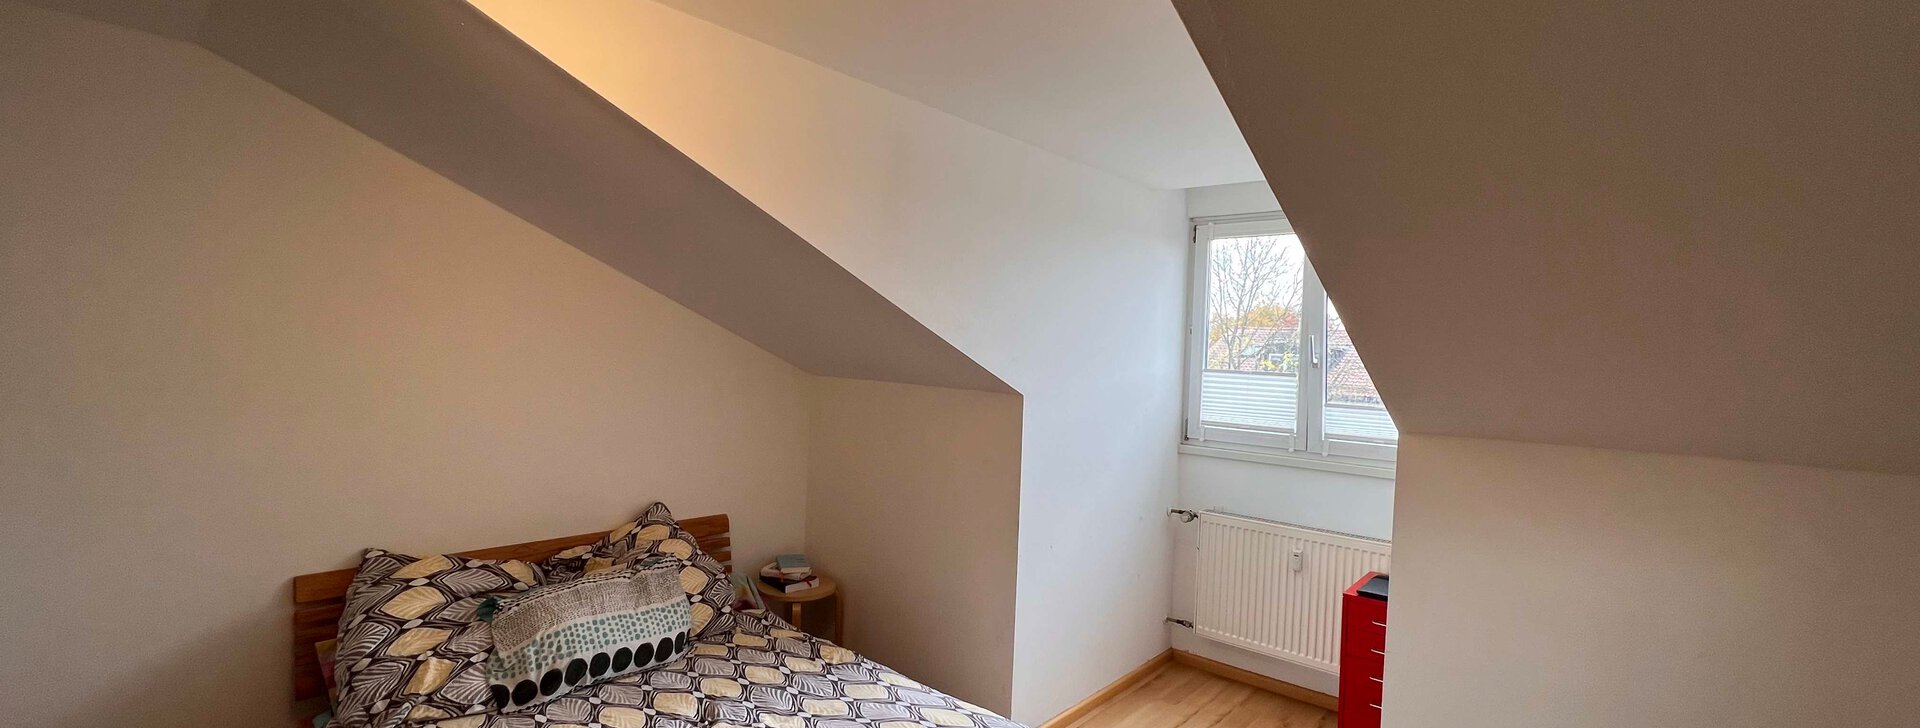 Schlafzimmer Dachgeschosswohnung in Traunstein, Immobilie mieten, Traunstein | © HausBauHaus GmbH